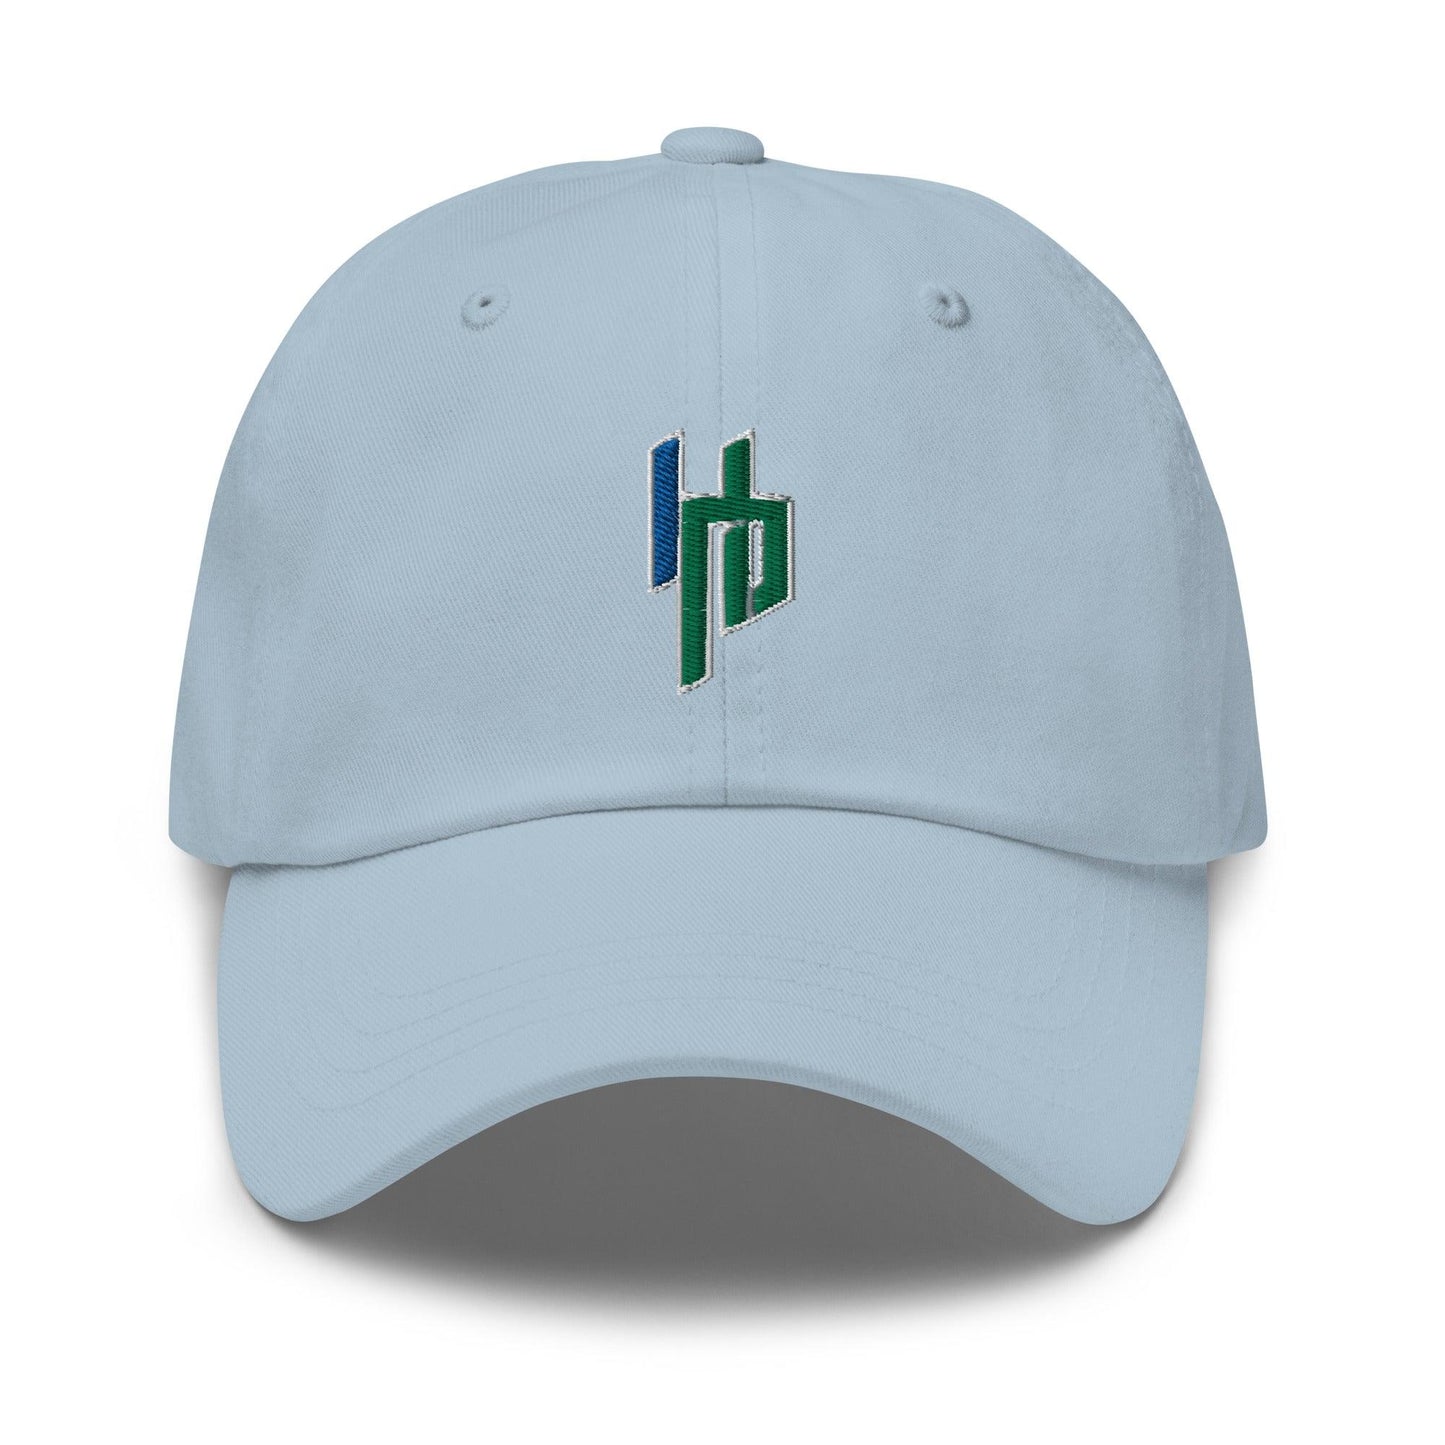 Harrison Povey "Essential" hat - Fan Arch